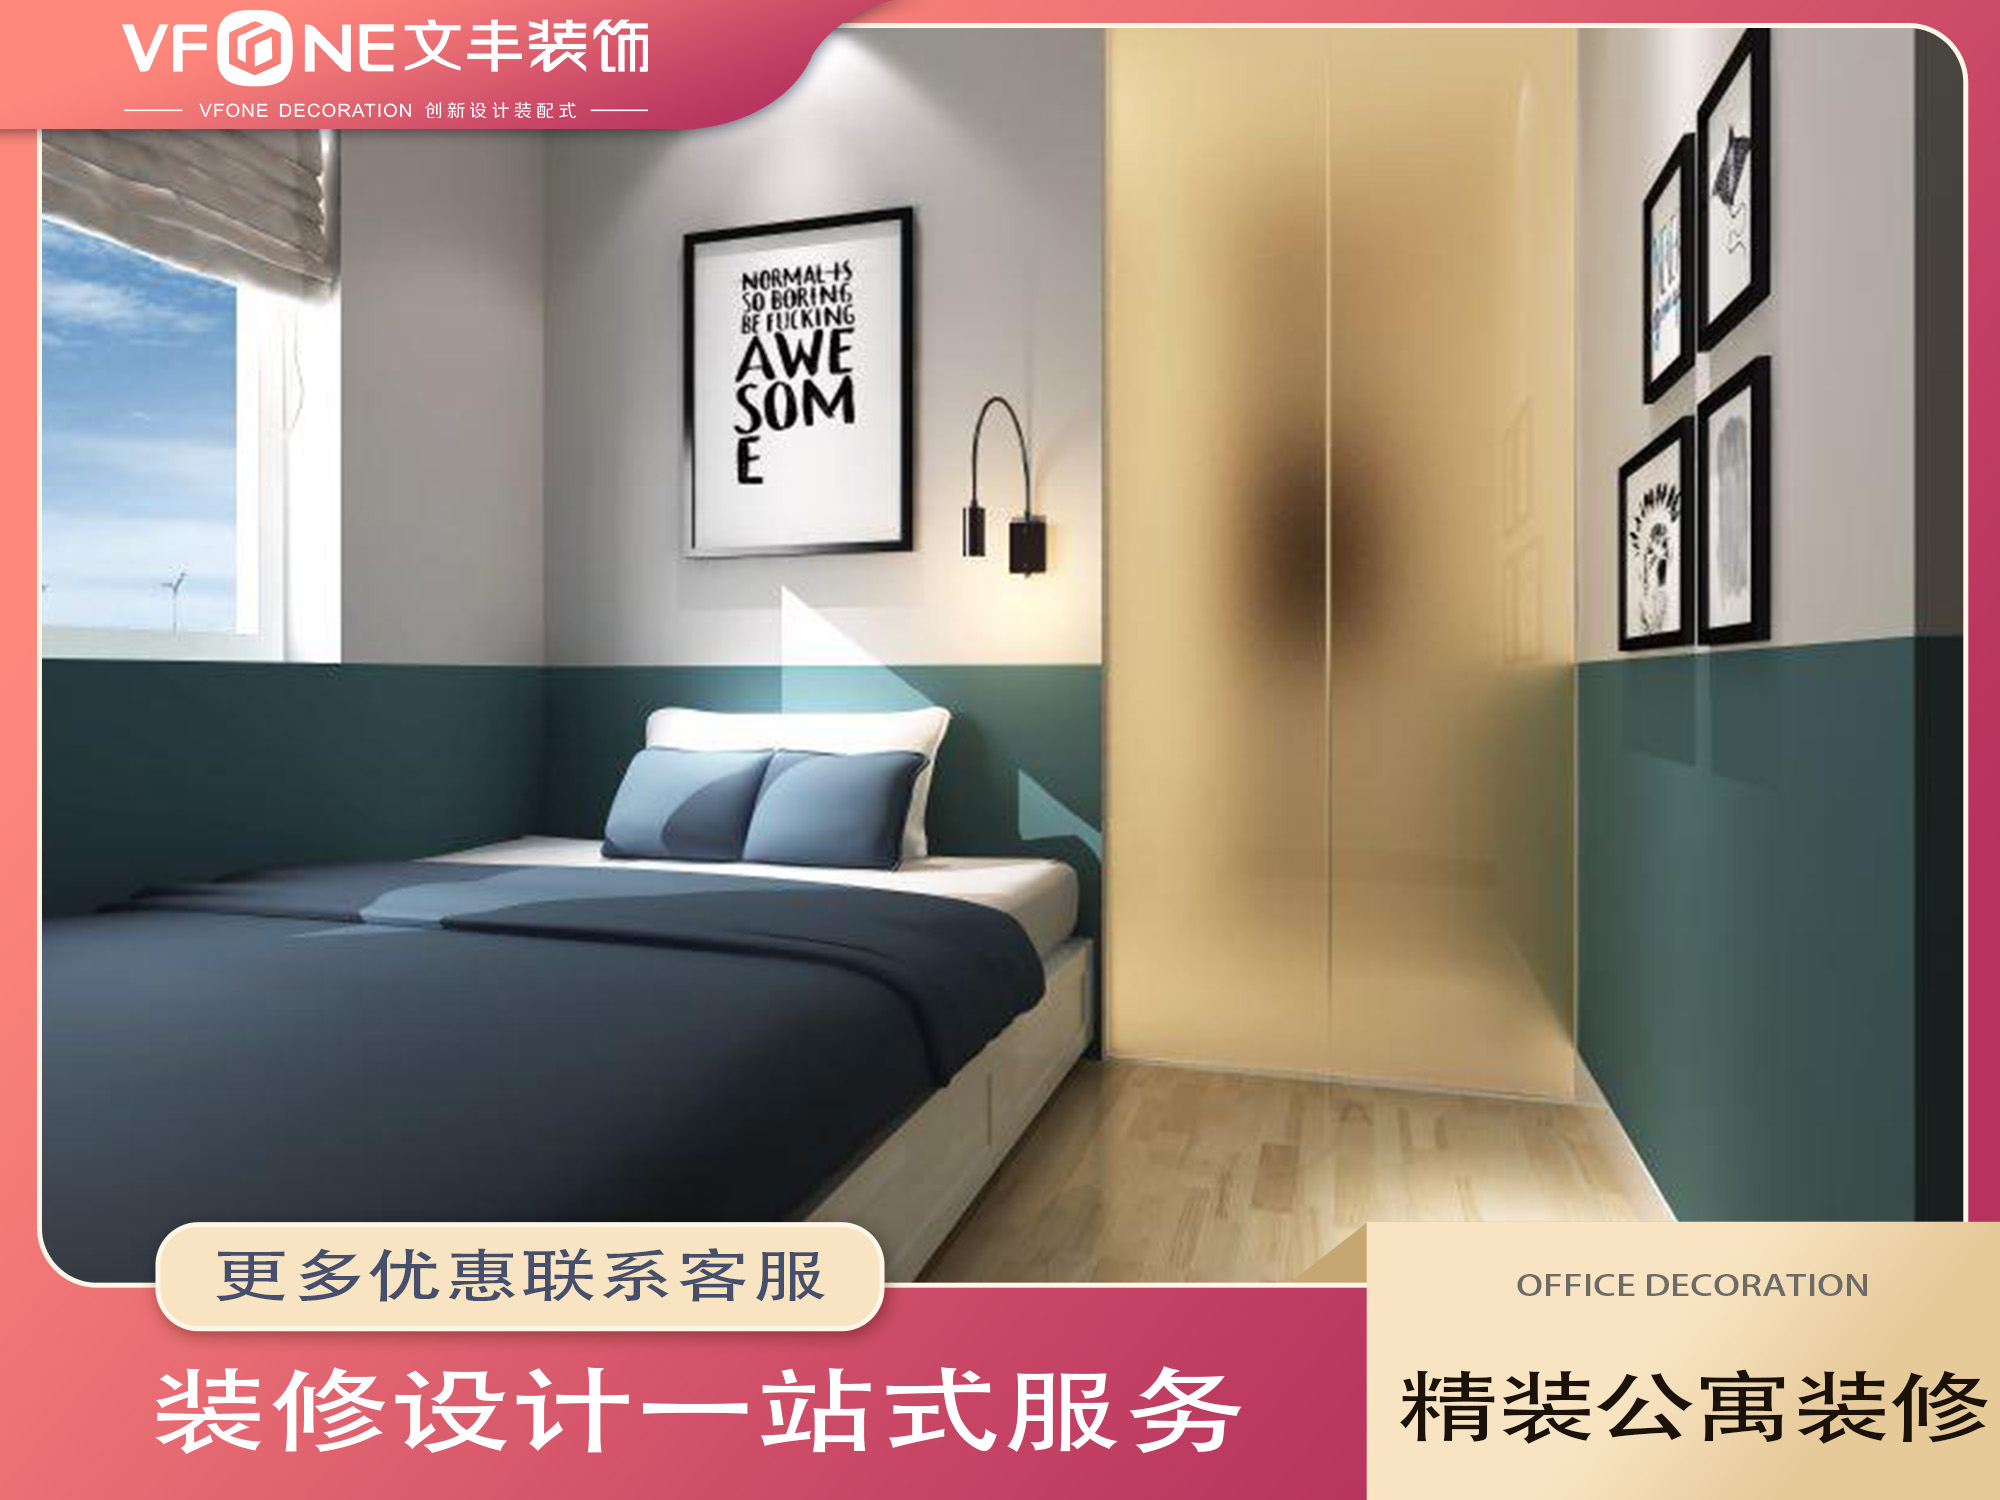 深圳公寓裝修, 公寓裝修設計, 公寓裝修效果圖